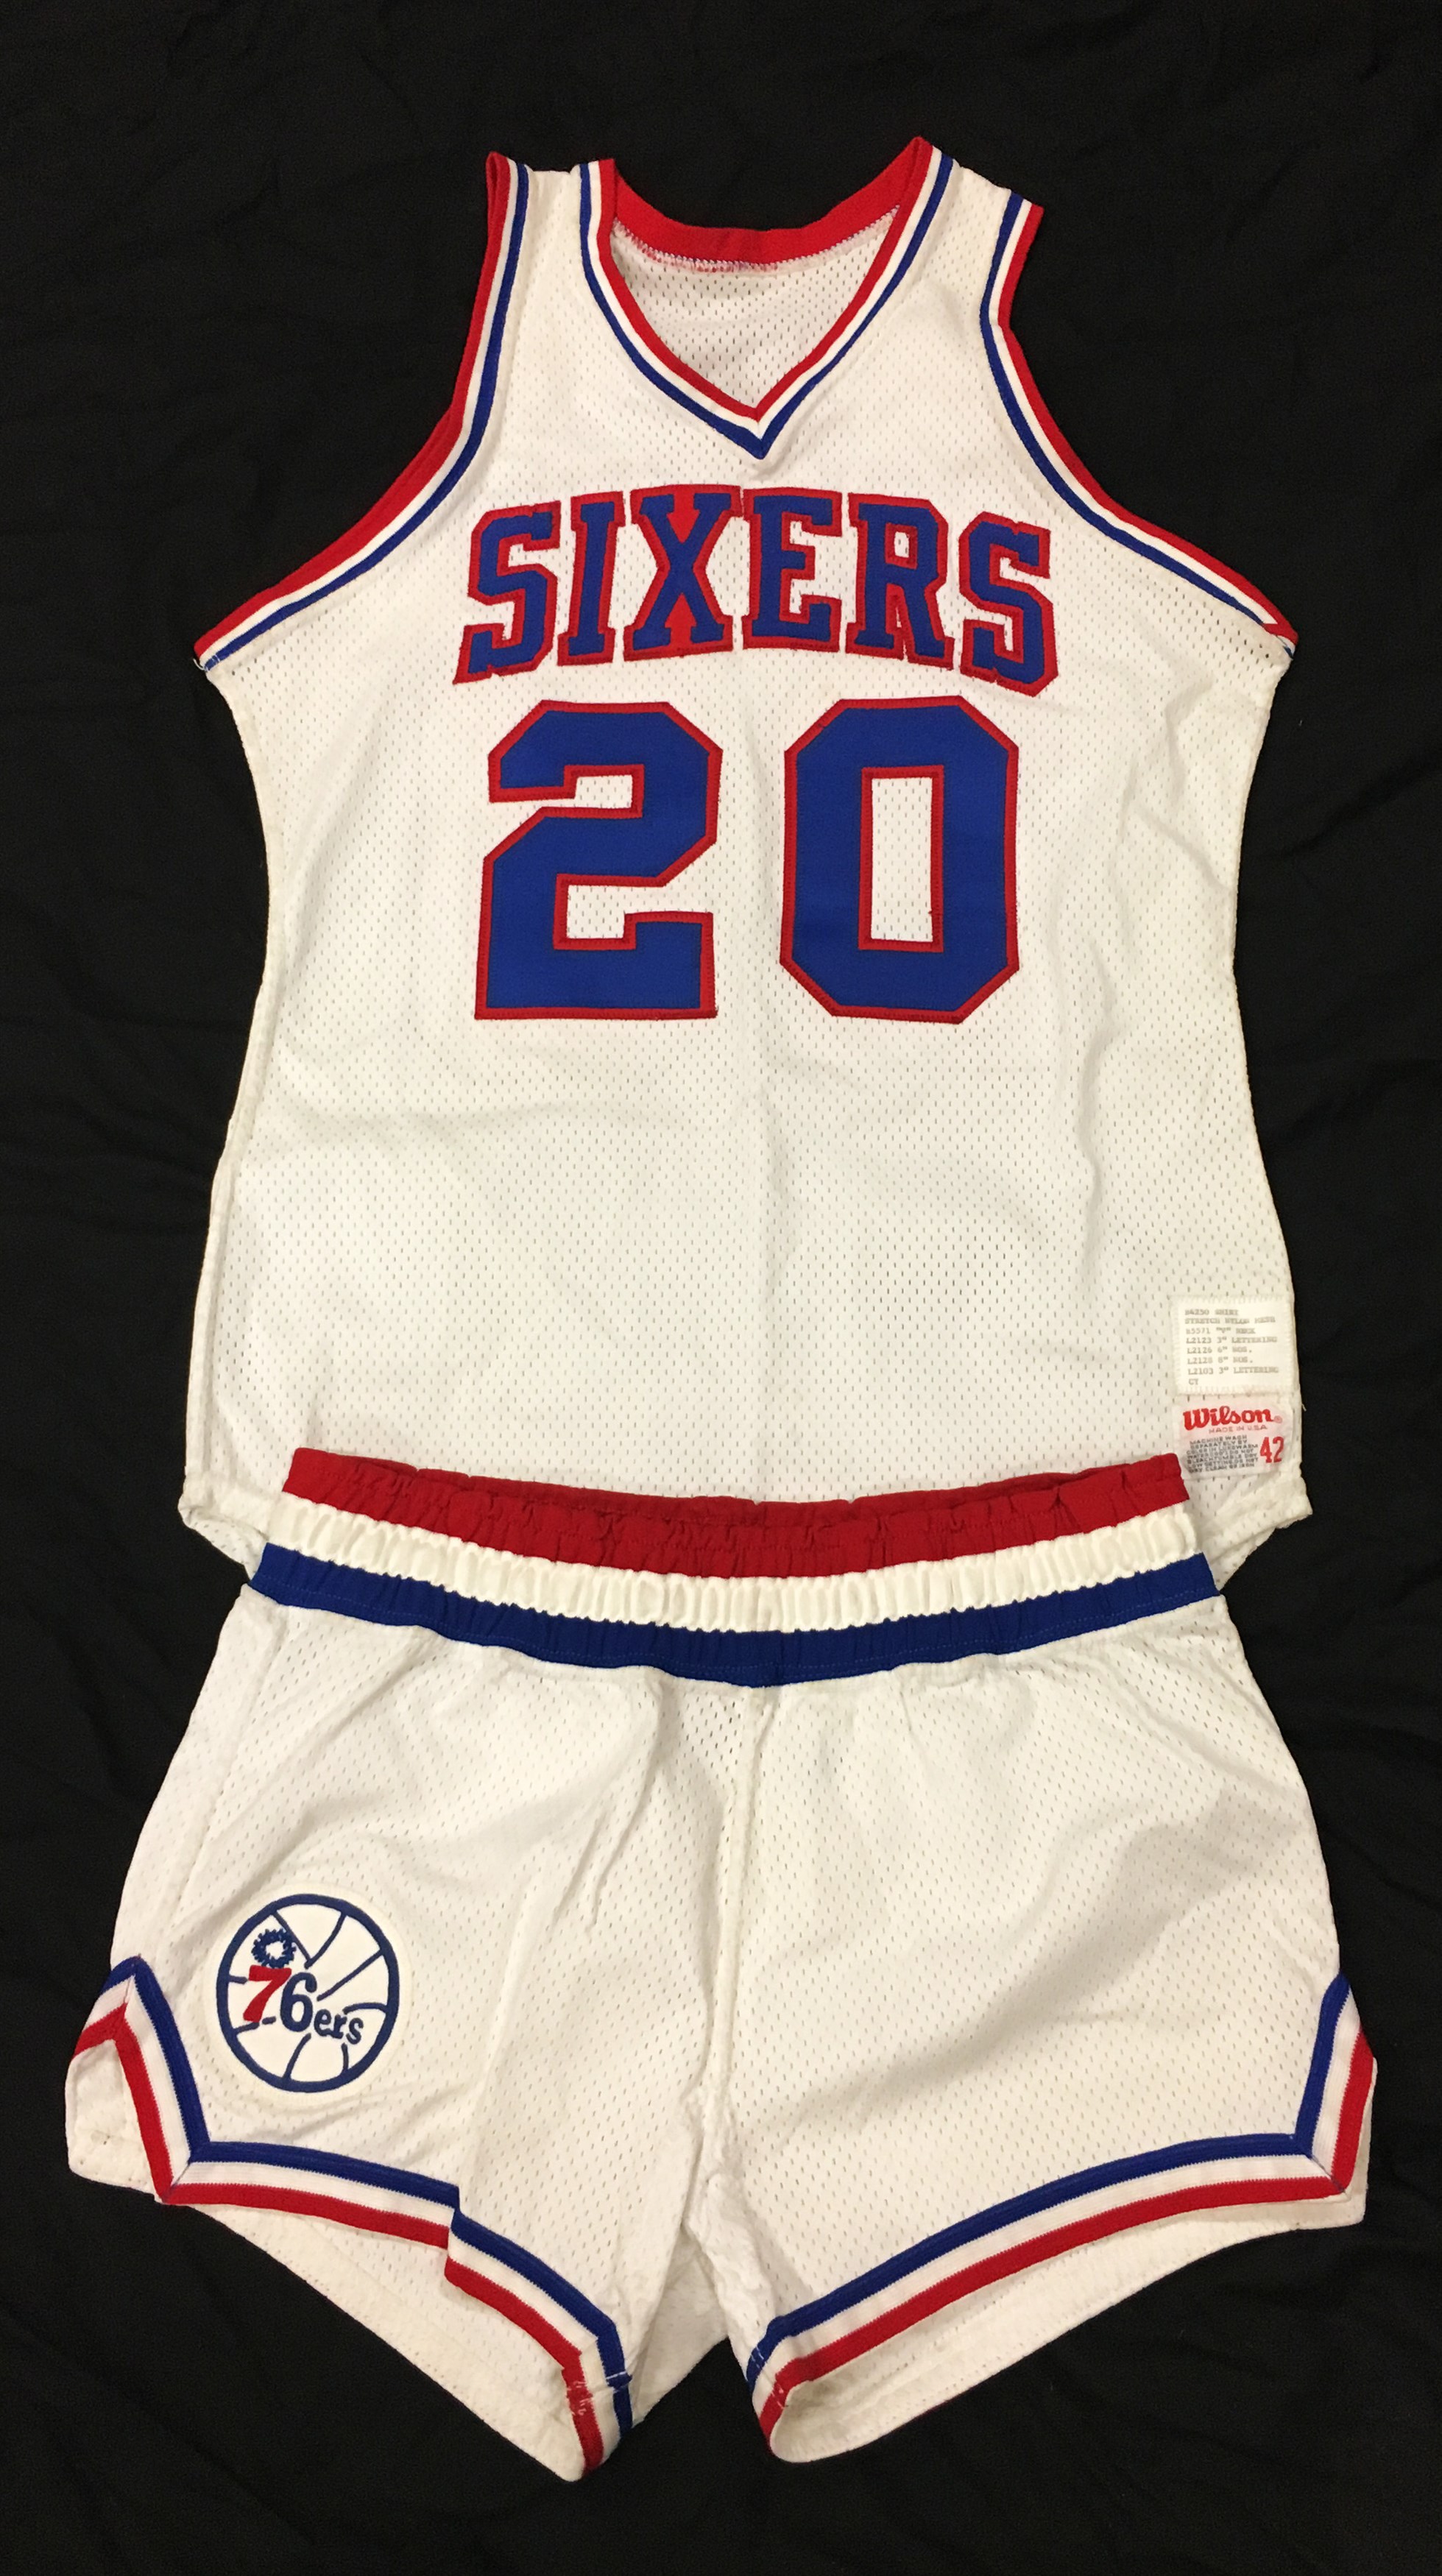 Basketball - 1979 Doug Collins Philadelphia 76ers Prototype Uniform